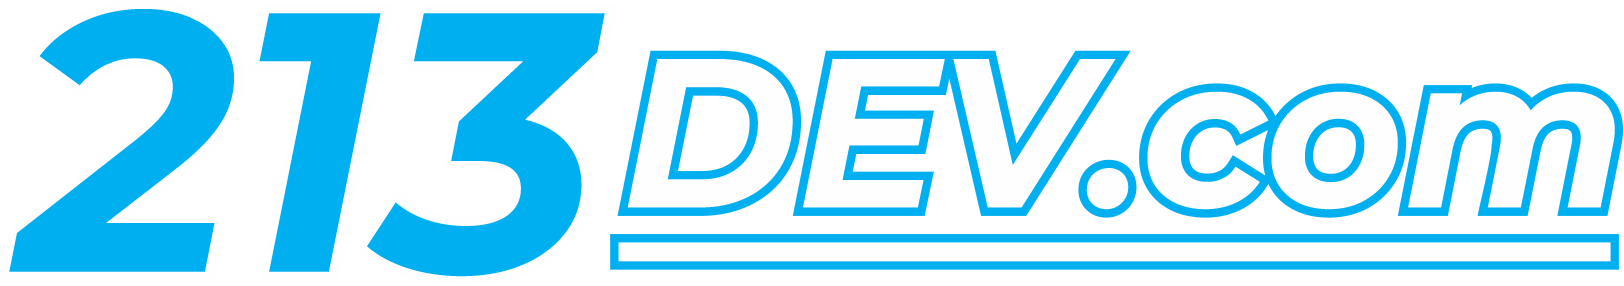 213dev.com Logo v1.2